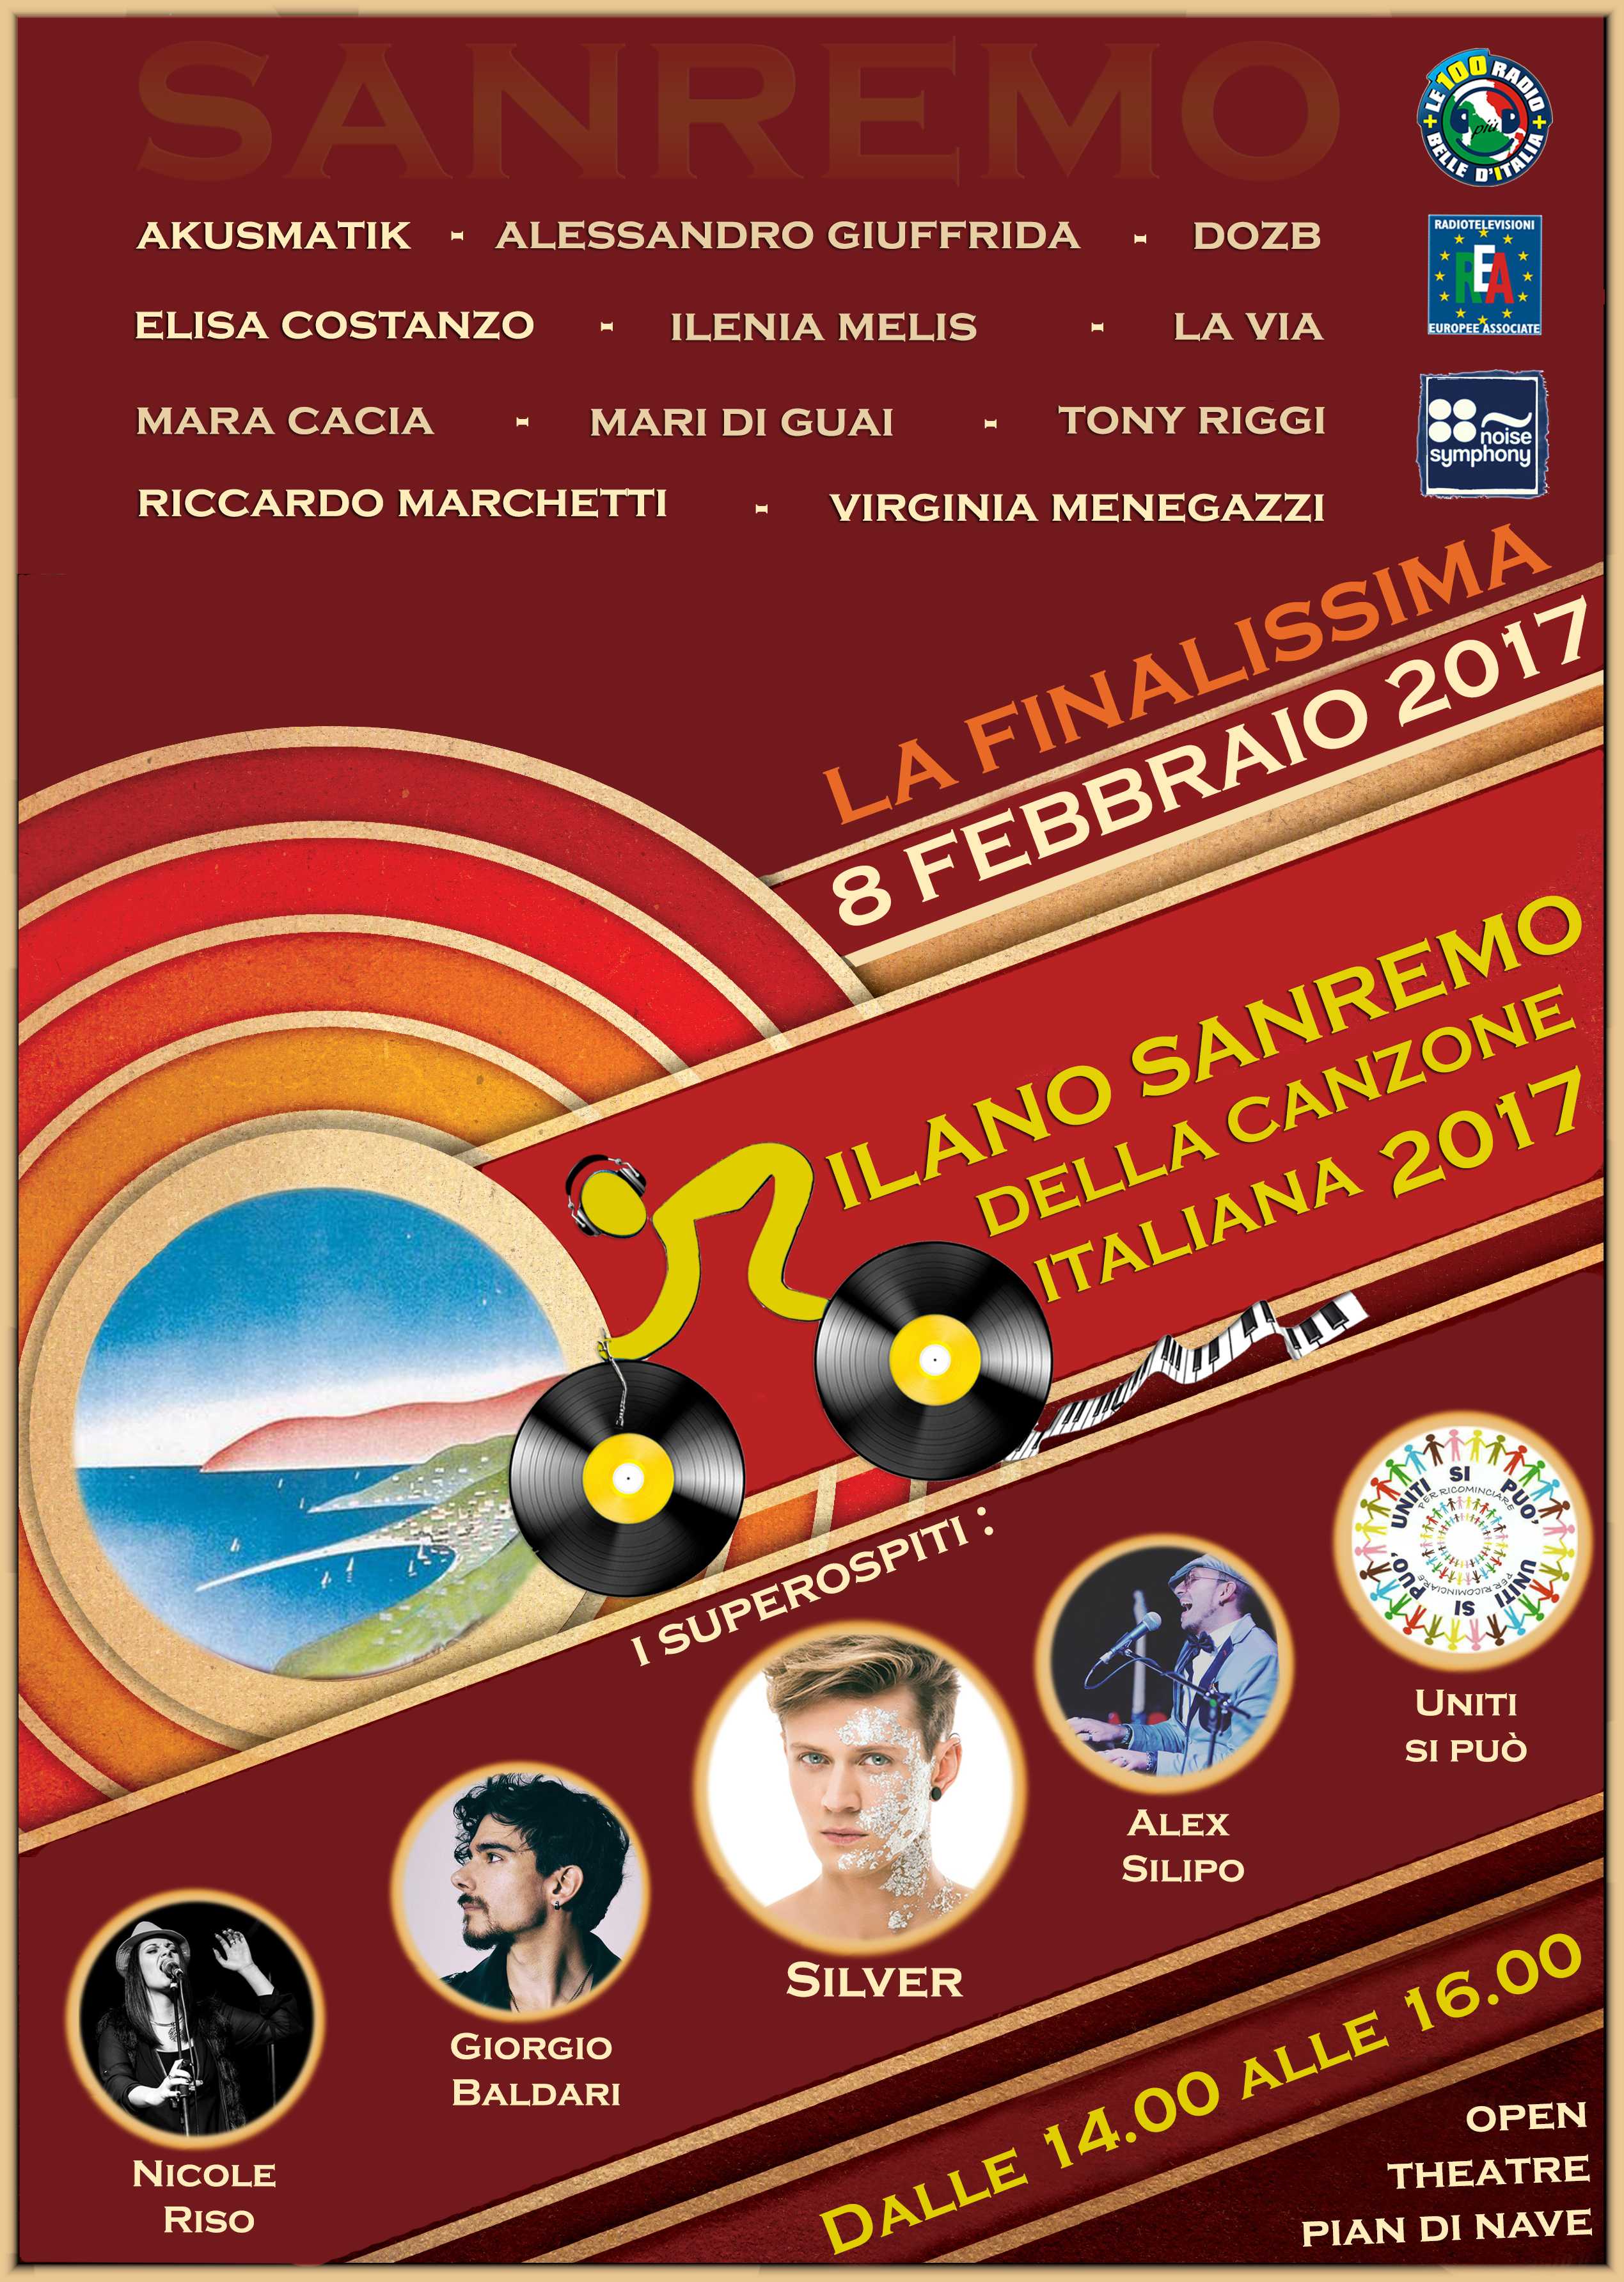 La volata finale de La Milano Sanremo della Canzone Italiana 2017